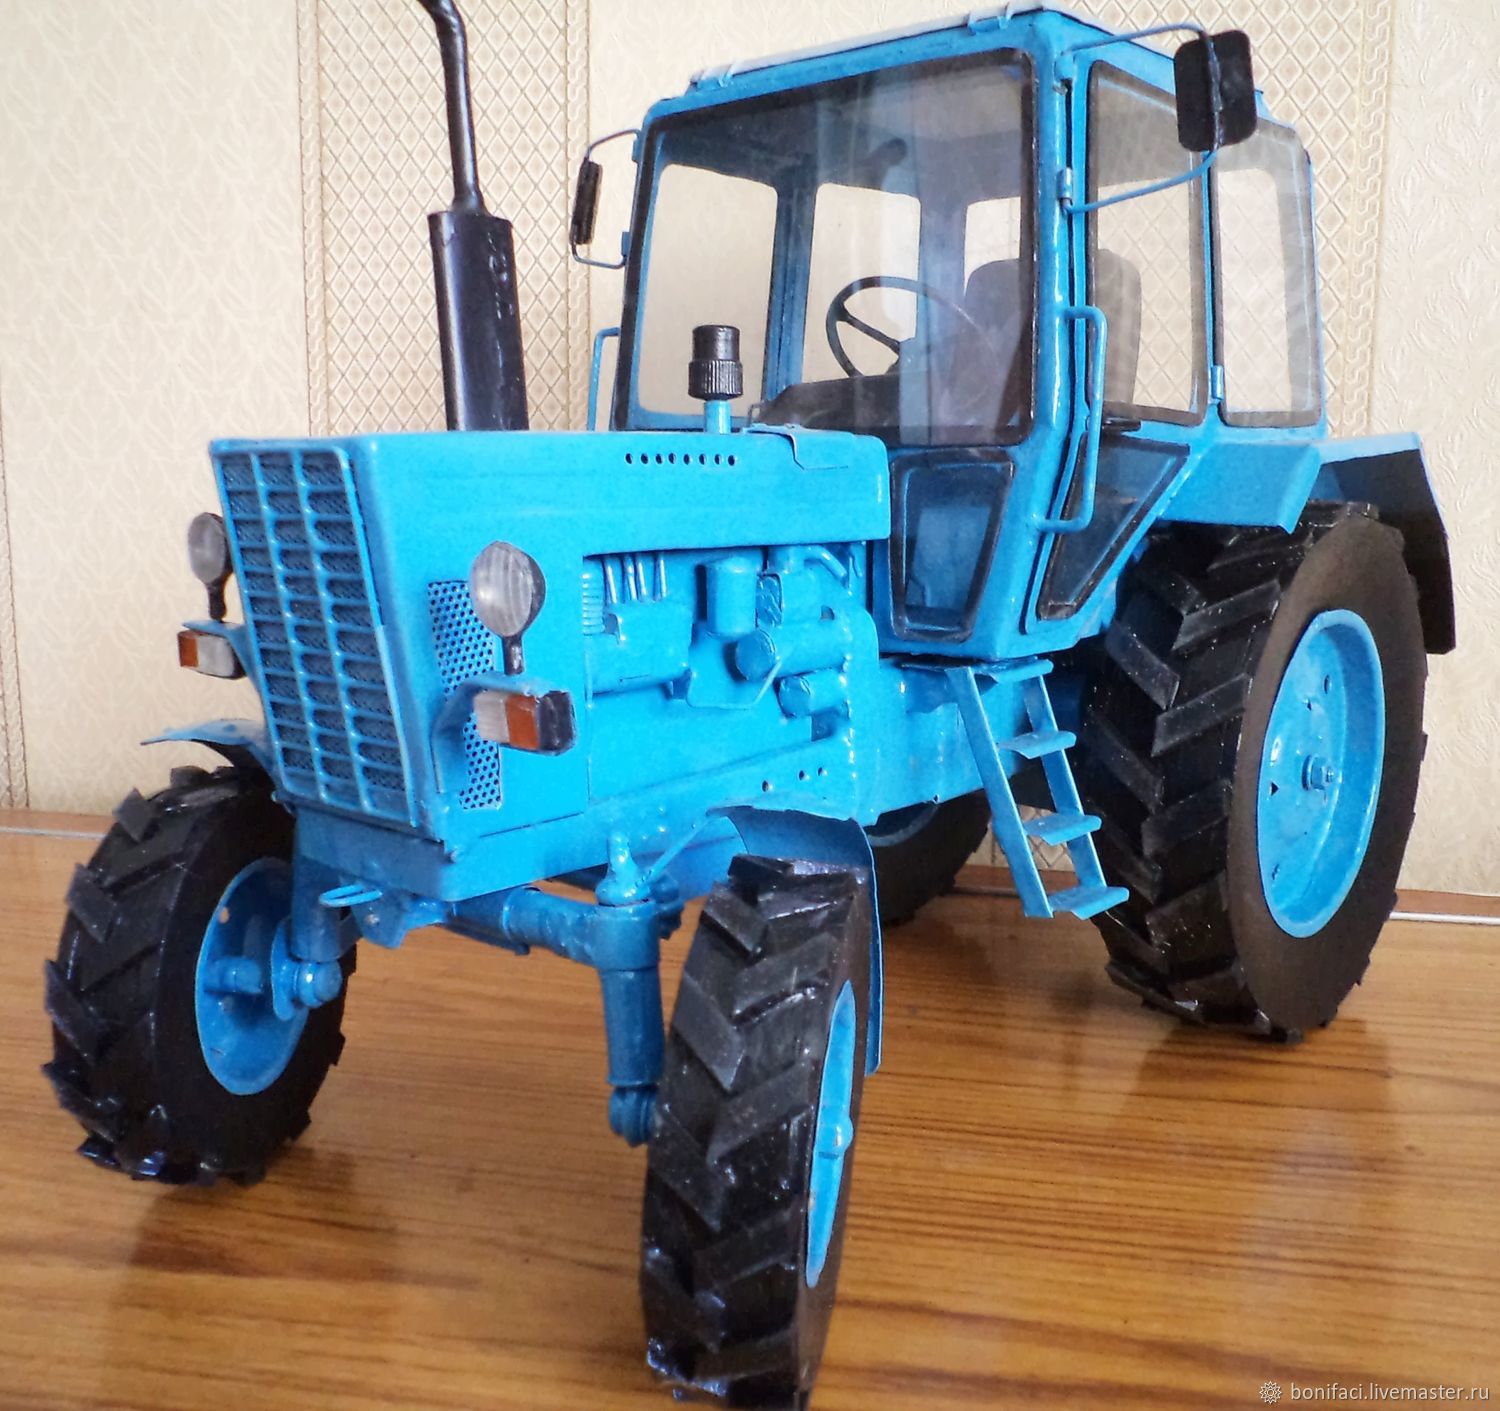 Где купить трактор мтз. Модель трактора МТЗ-80. Синий трактор МТЗ 80. МТЗ 80 модель. Модель МТЗ Беларус 82.1..